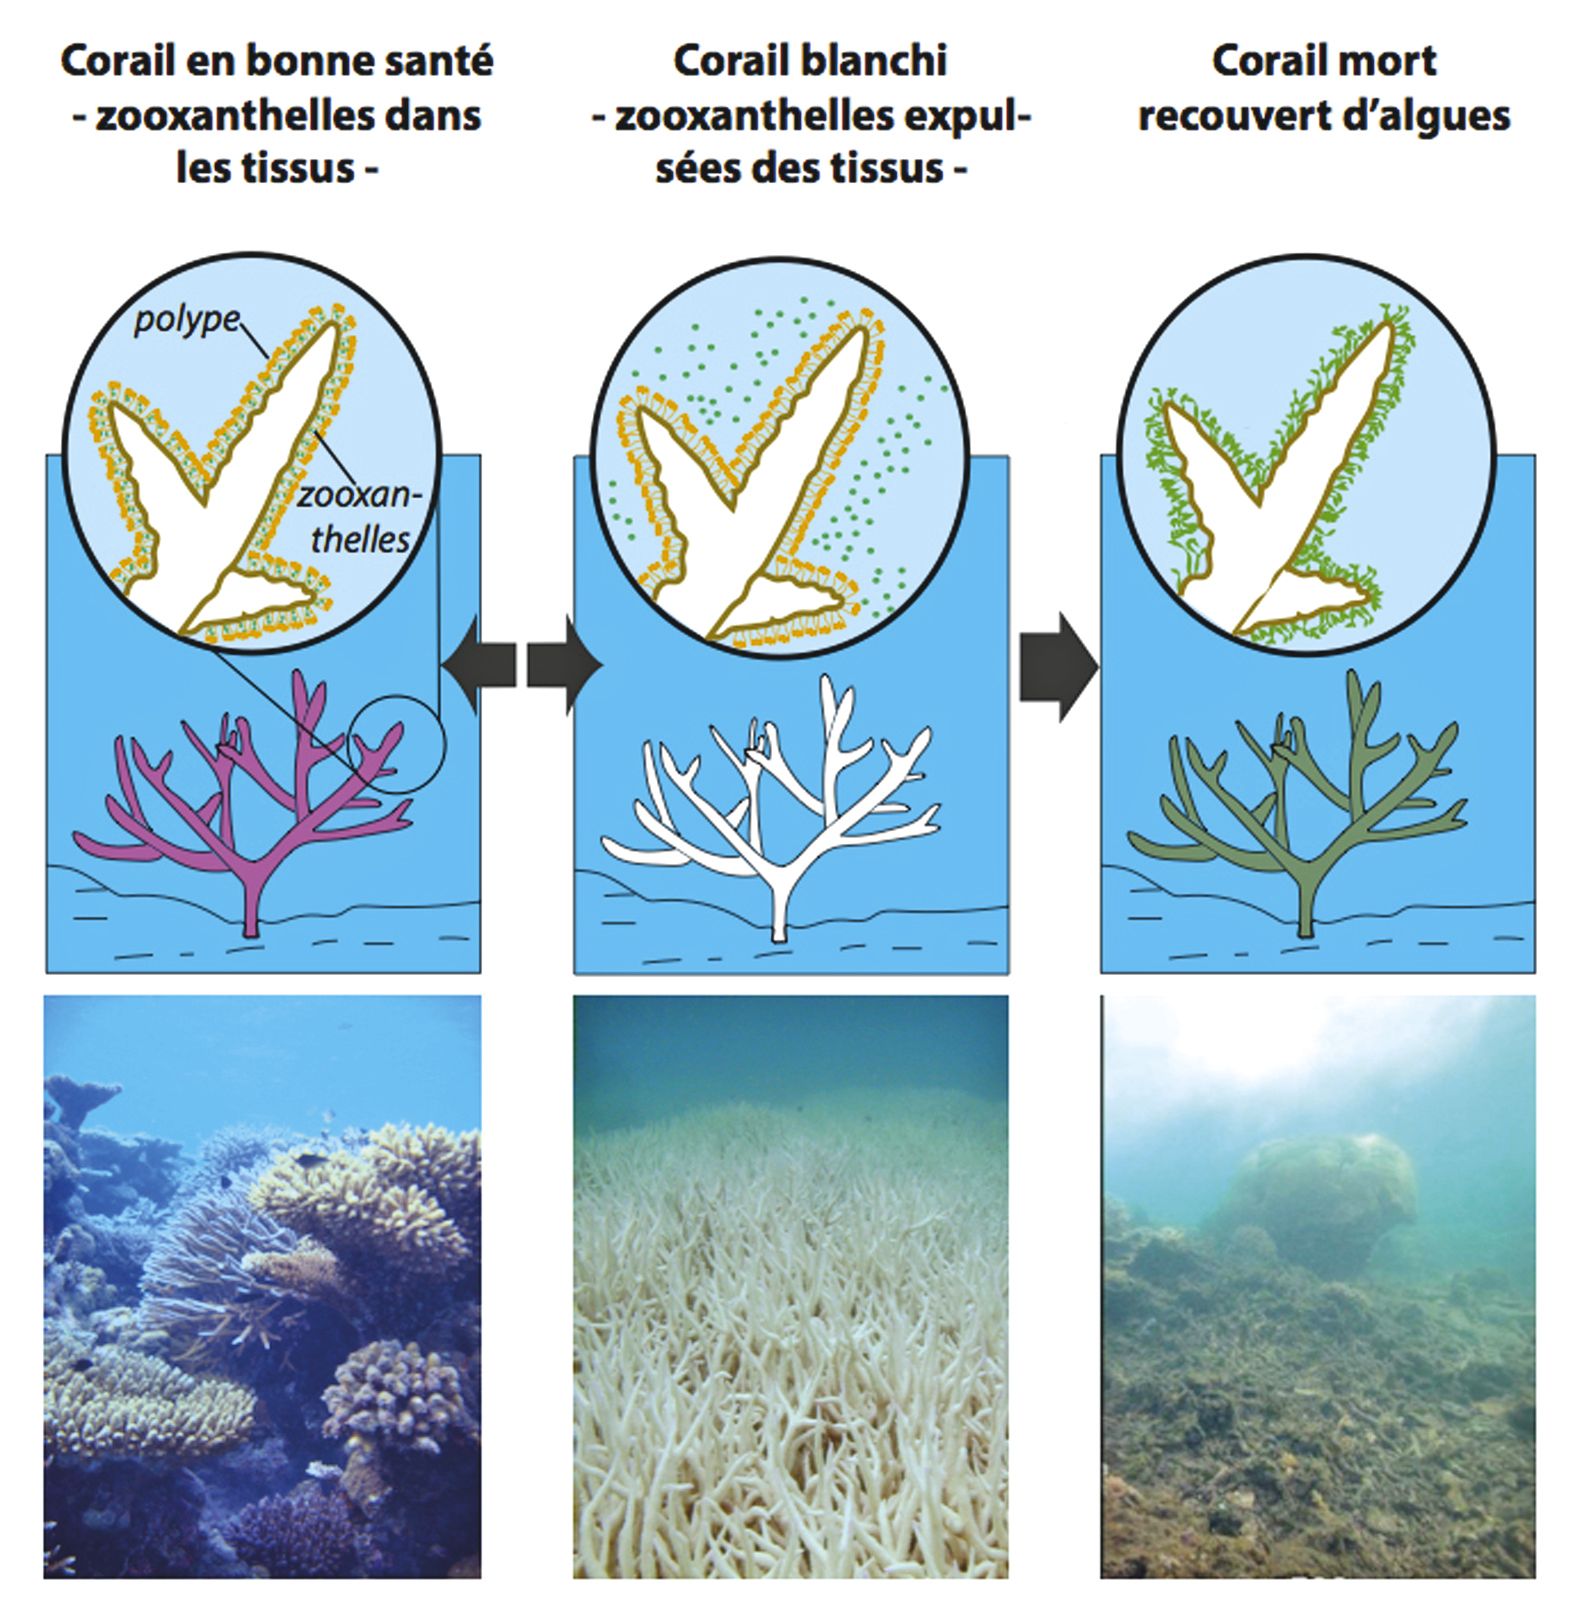 Stressés, les coraux blanchissent en expulsant les algues microscopiques qui vivent dans leur tissu. Si le stress perdure, cela entraîne une perte des tissus coralliens. Lorsque le squelette est mis à nu et qu'il est colonisé par les algues, il est mort.